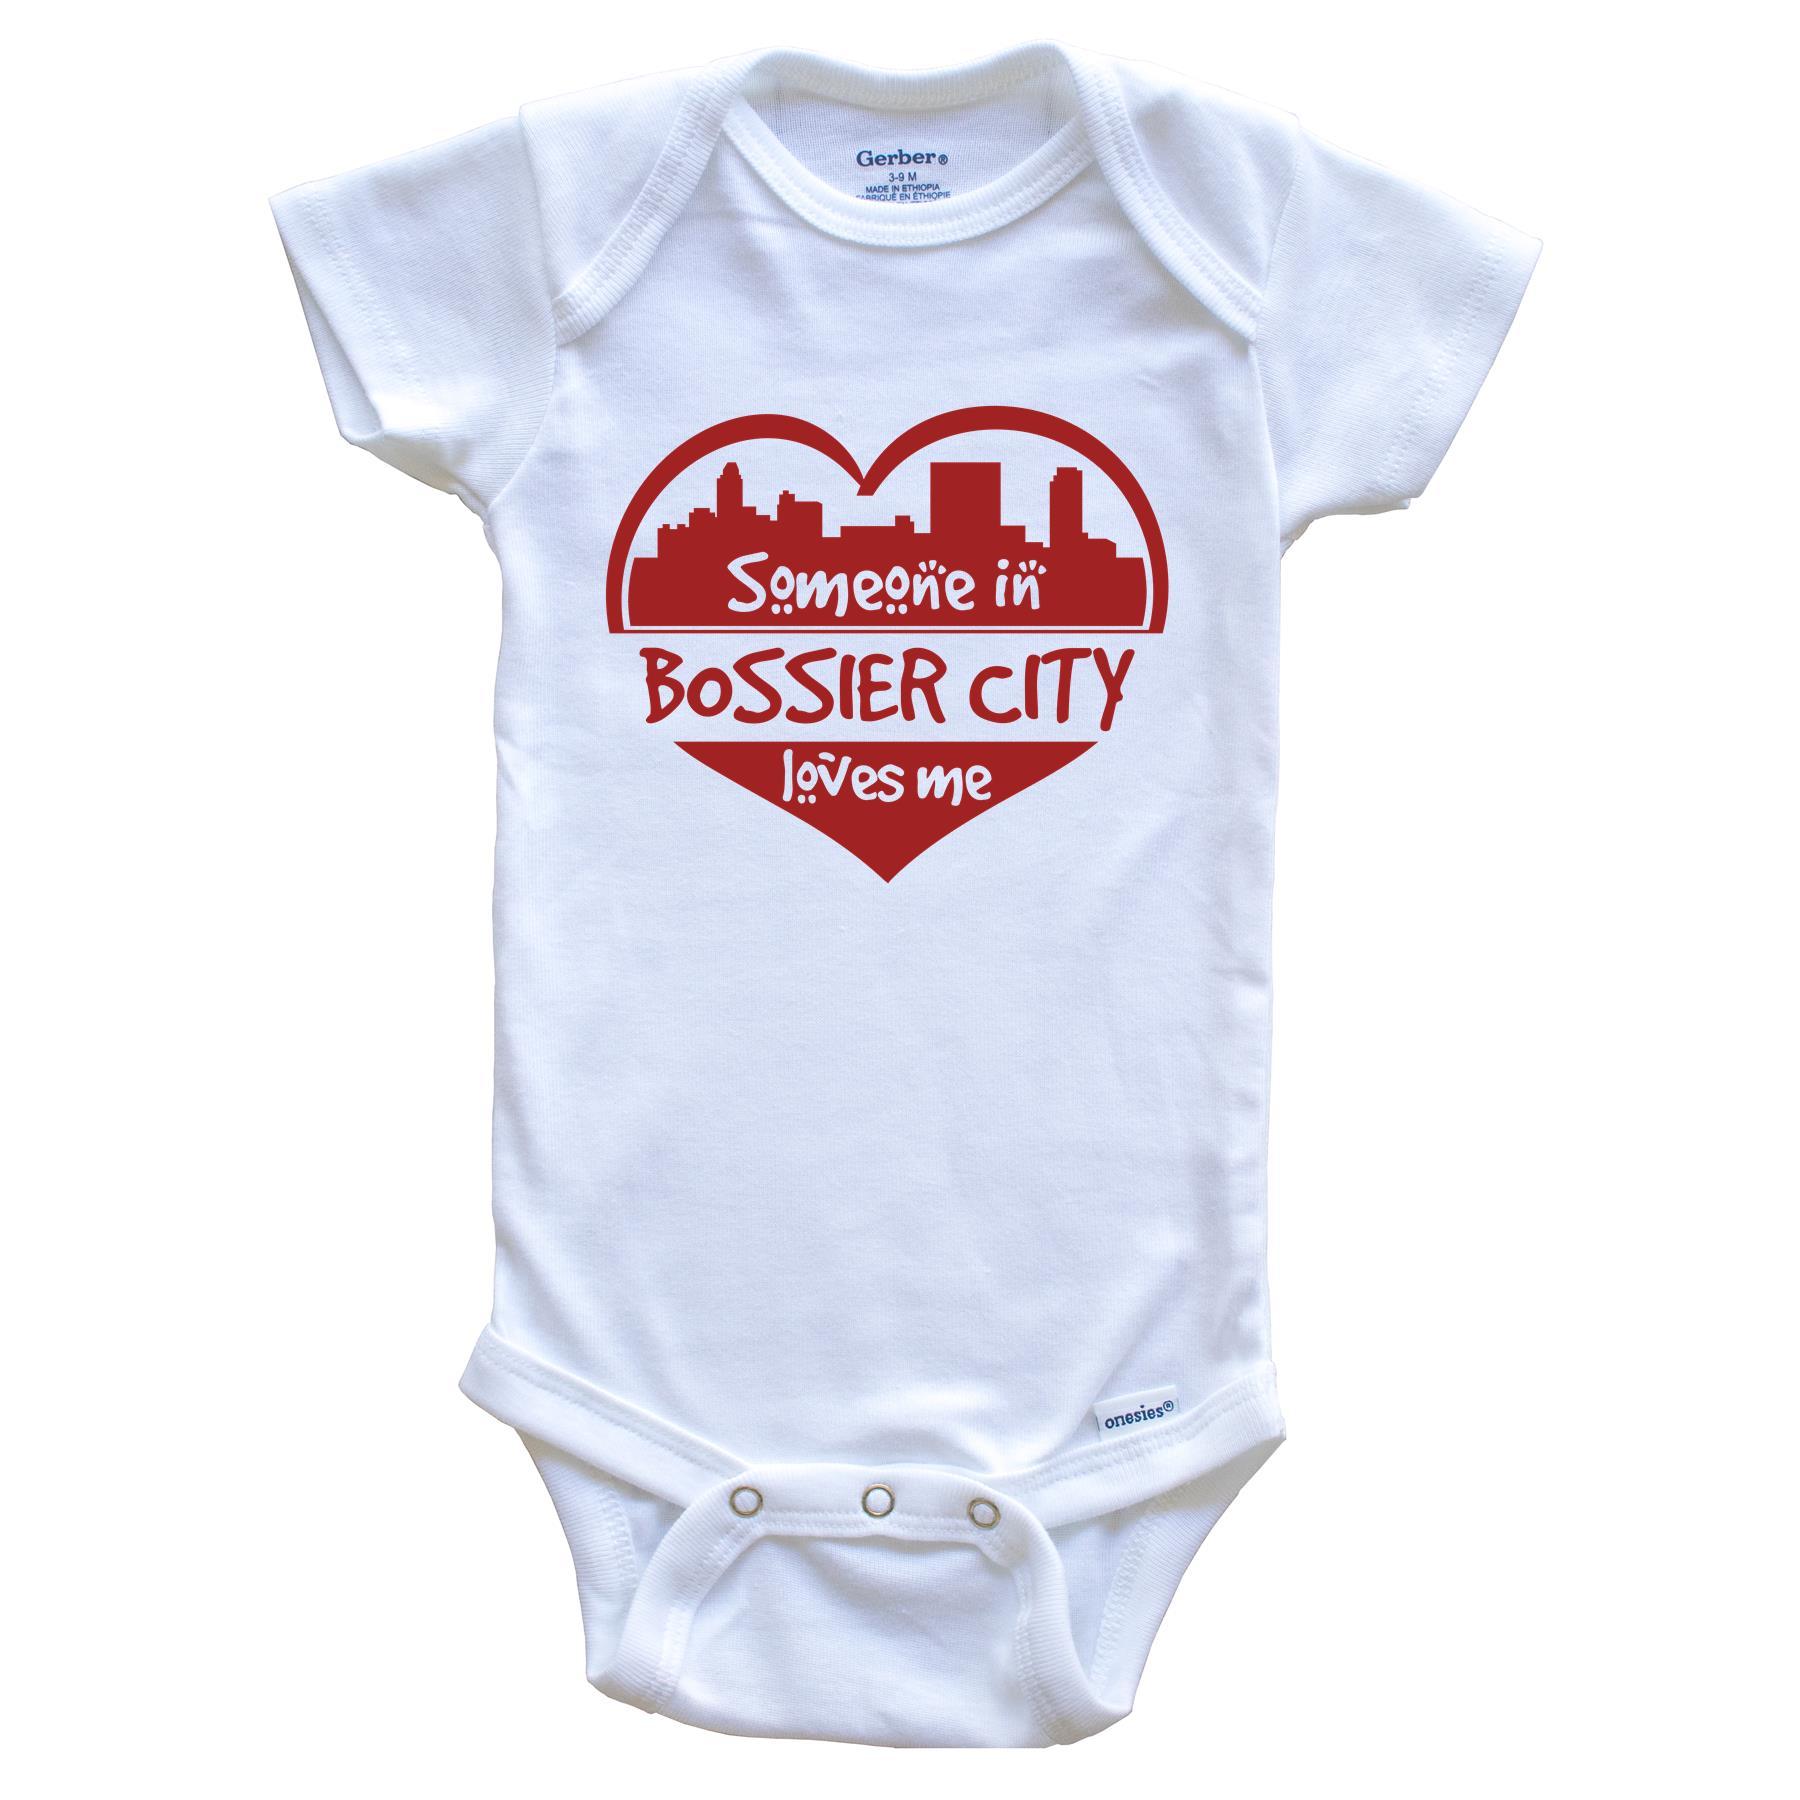 Someone in Bossier City Loves Me Bossier City Louisiana Skyline Heart Baby Onesie